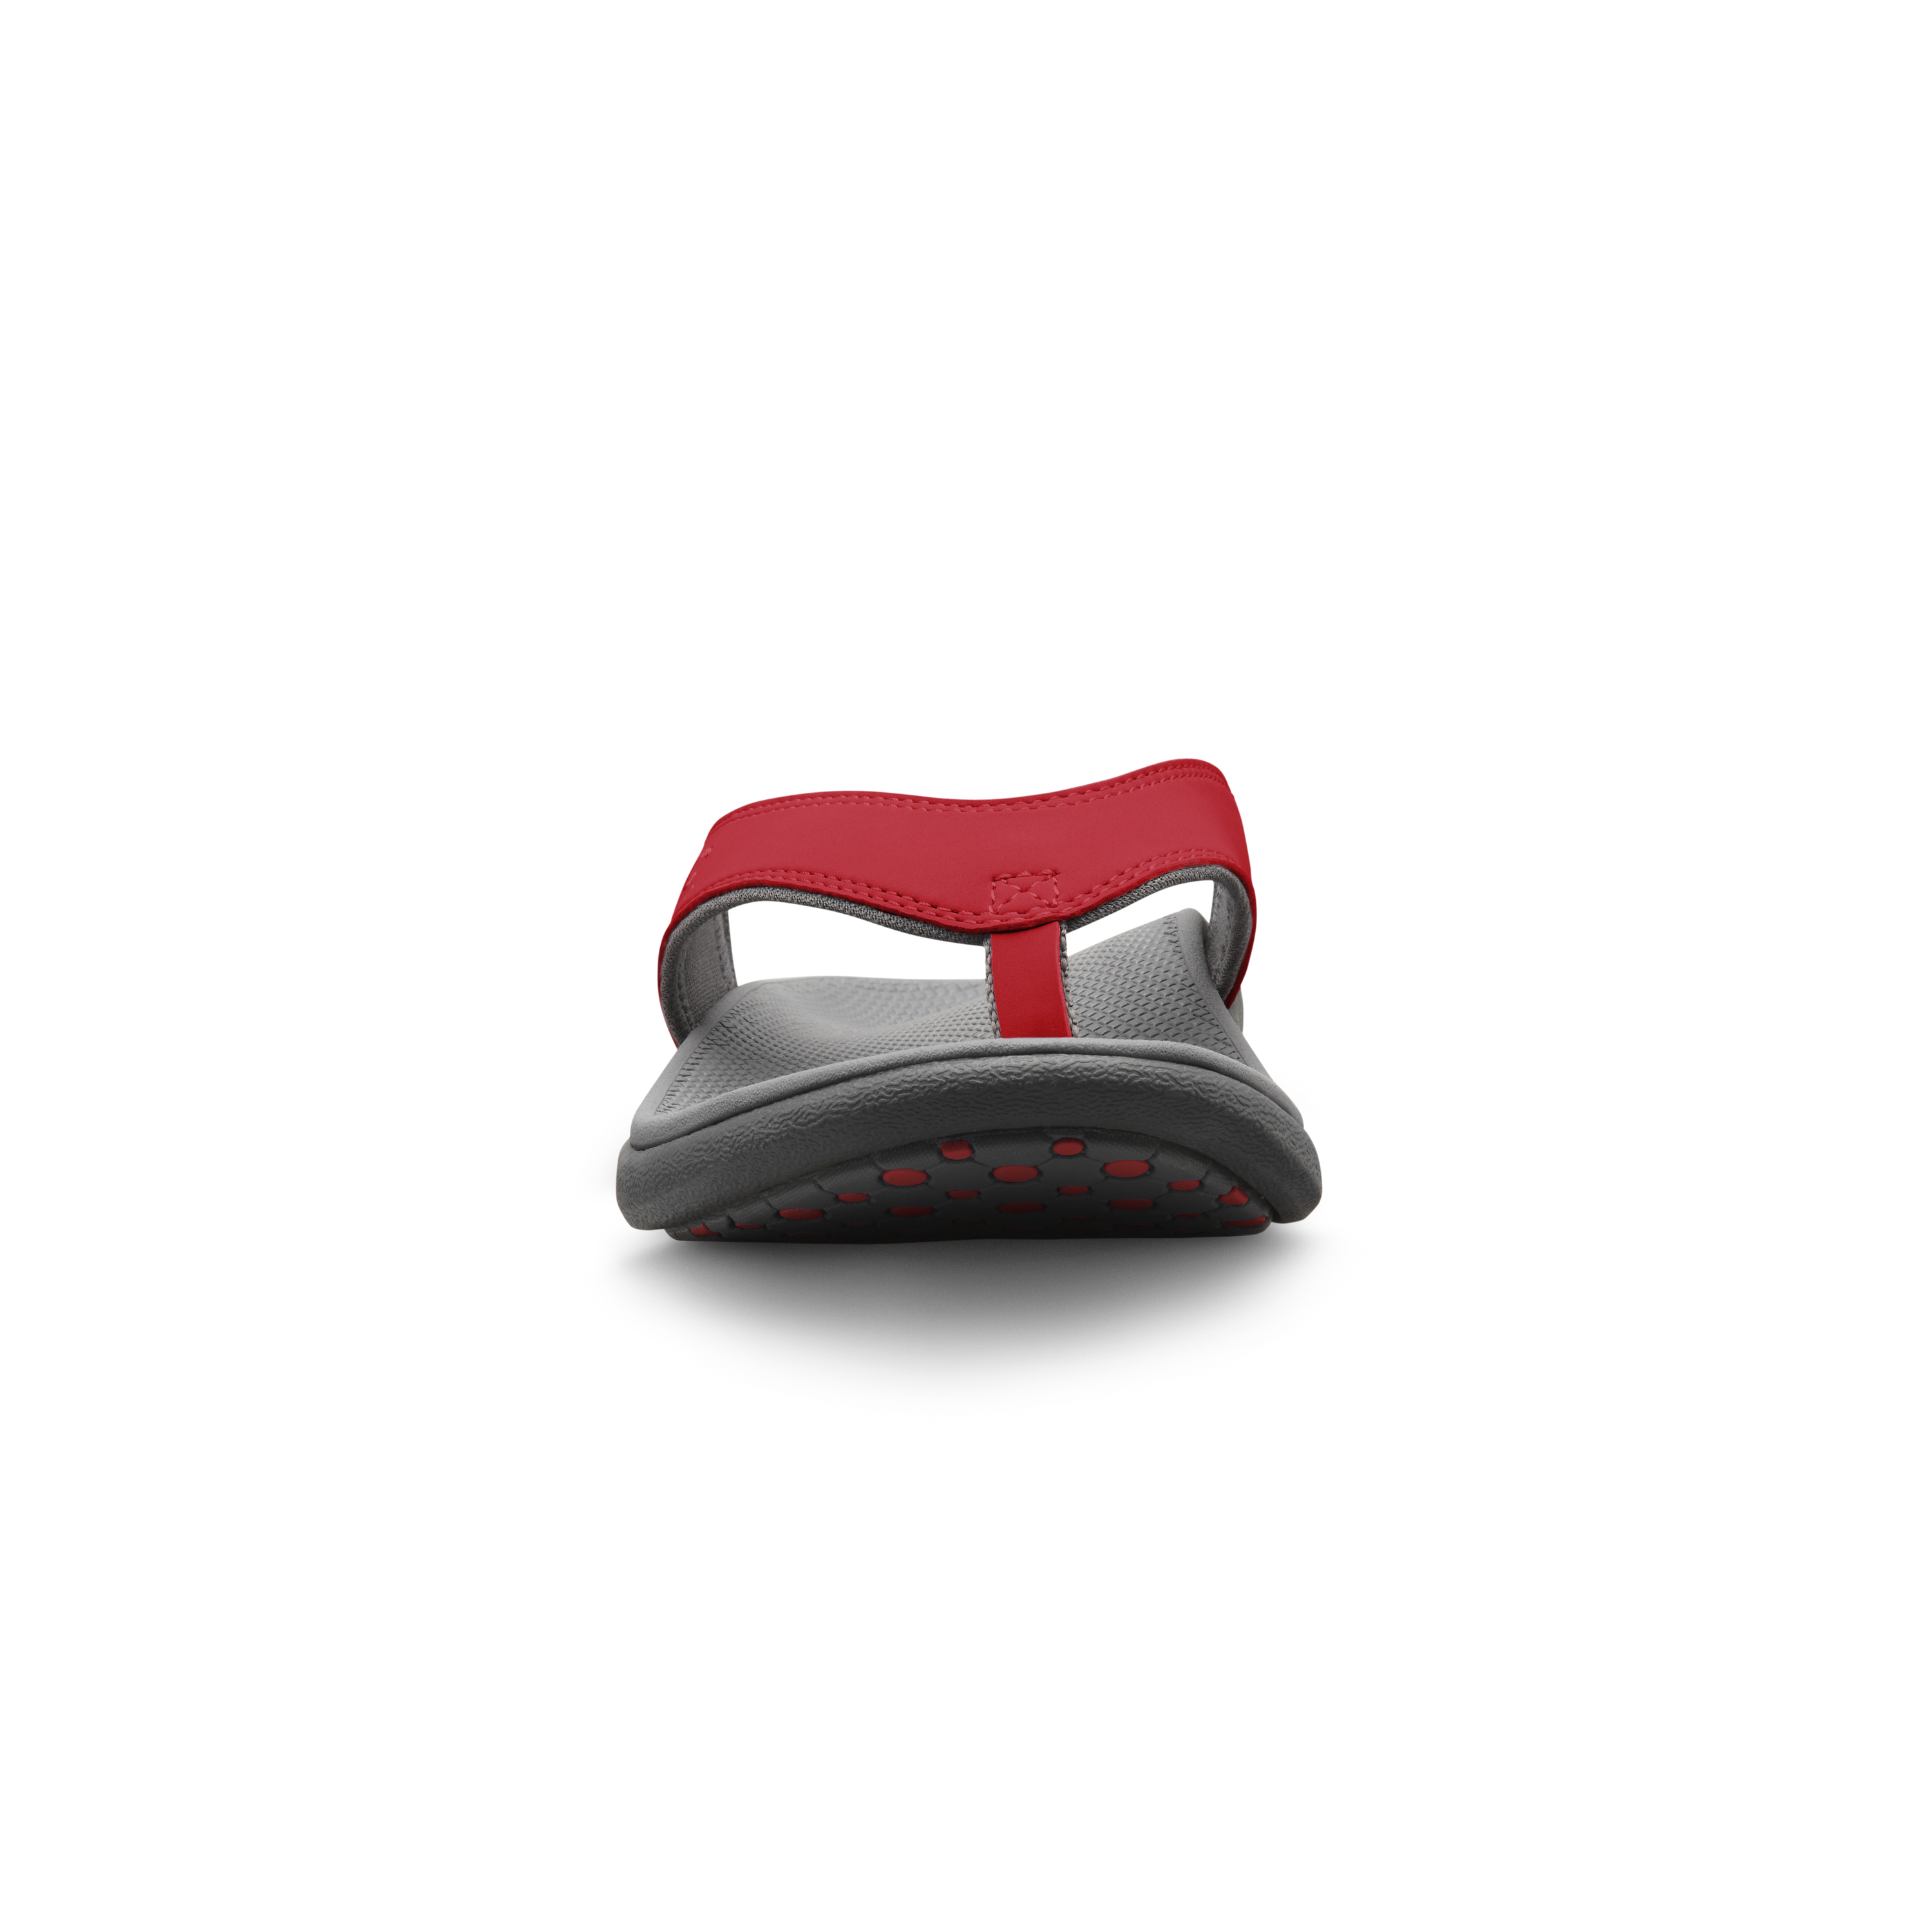 Zusatzbild DR. COMFORT® Shannon rot, vorne, Orthopädische Schuhe, Leichter Sommerschuh mit eingearbeitetem Fußbett für mehr Stabilität